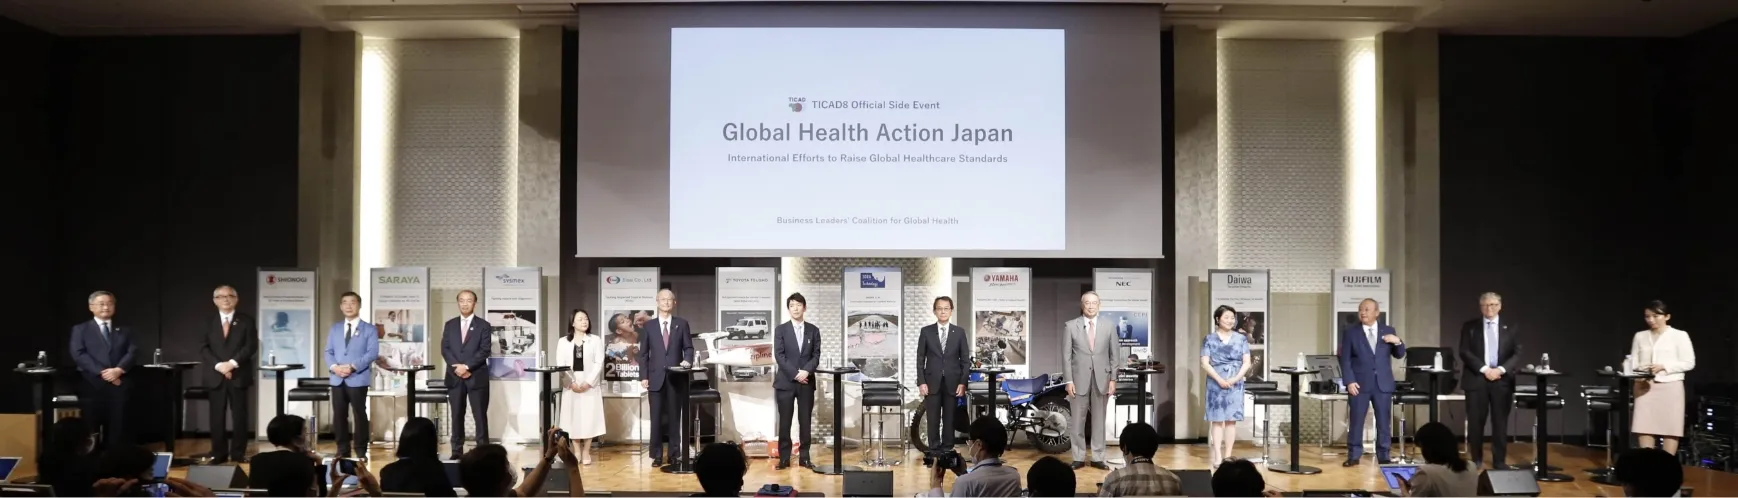 2022年8月19日 「TICAD8」に向けた公式サイドイベント 「Global Health Action Japan〜世界の保健医療水準を高めるための日本企業の活動〜」 ビル・ゲイツ氏来日